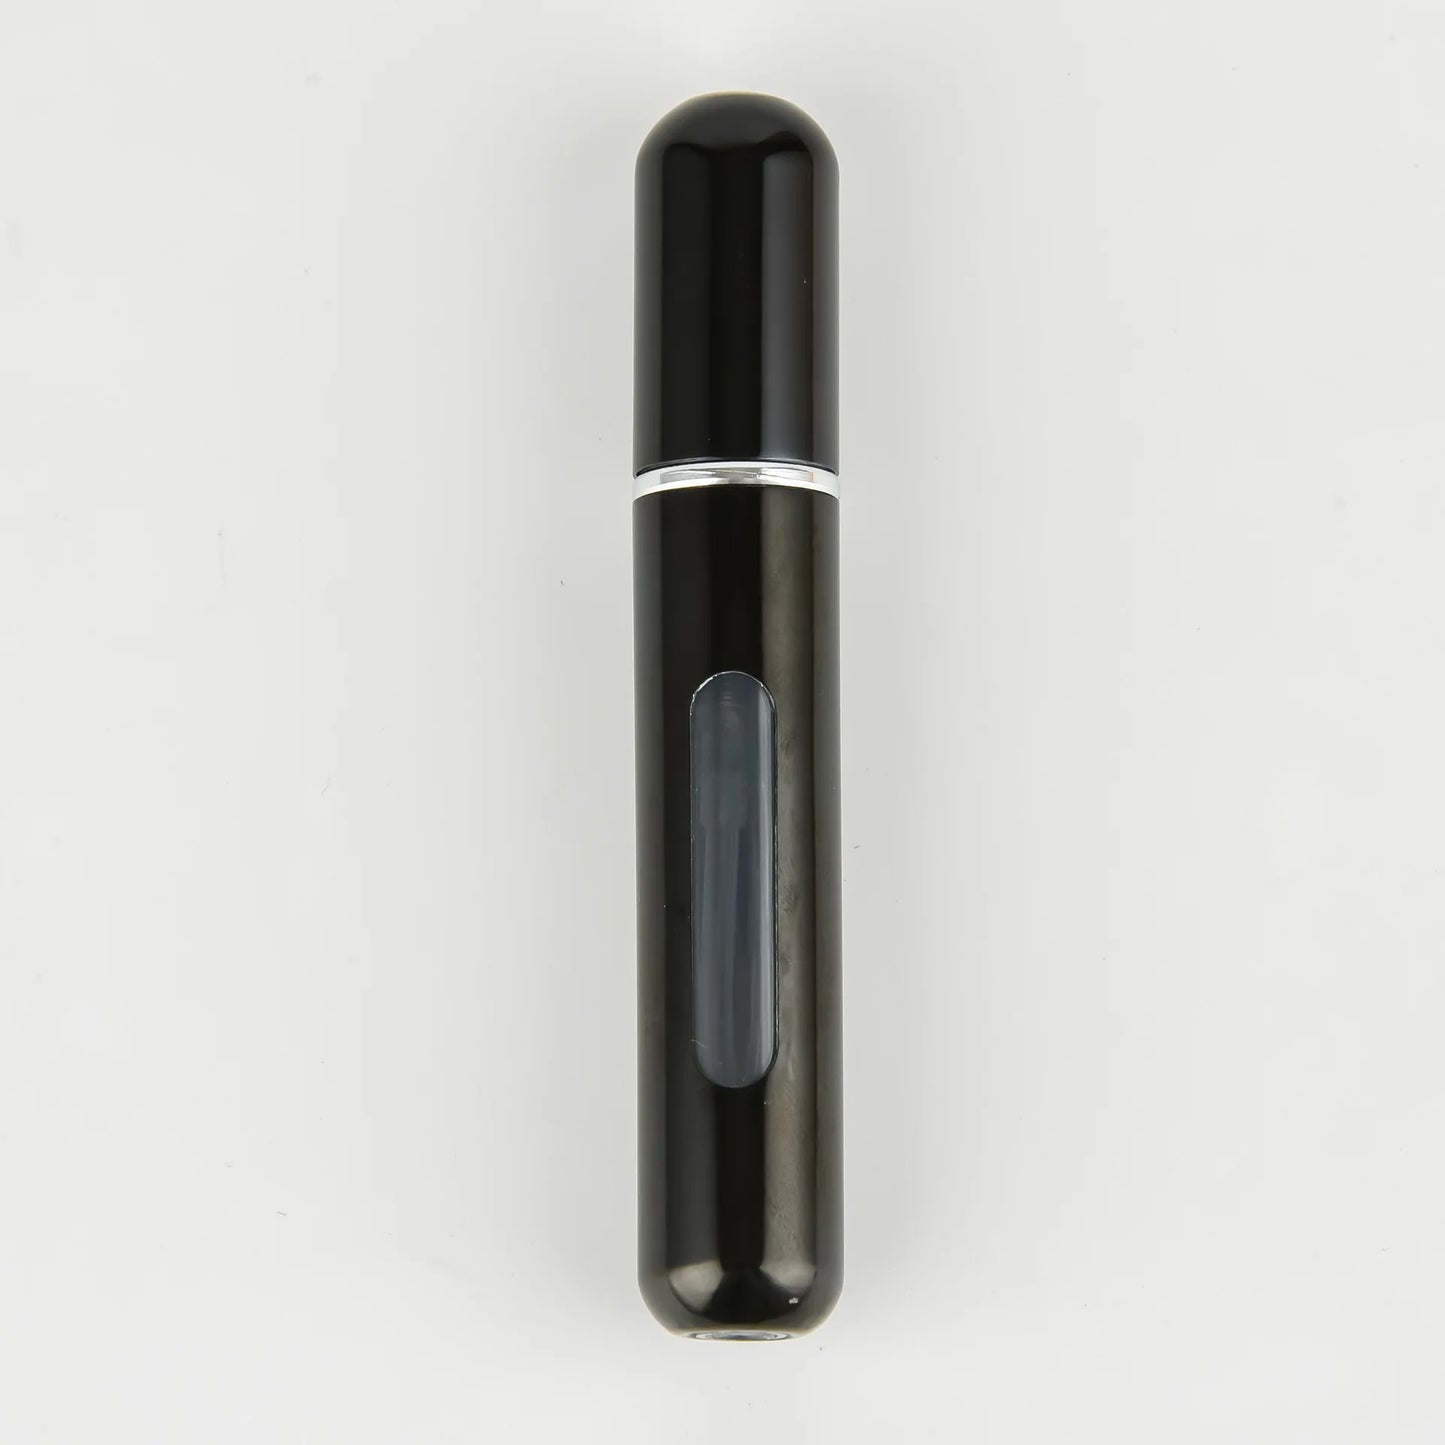 Portable Perfume Atomizer